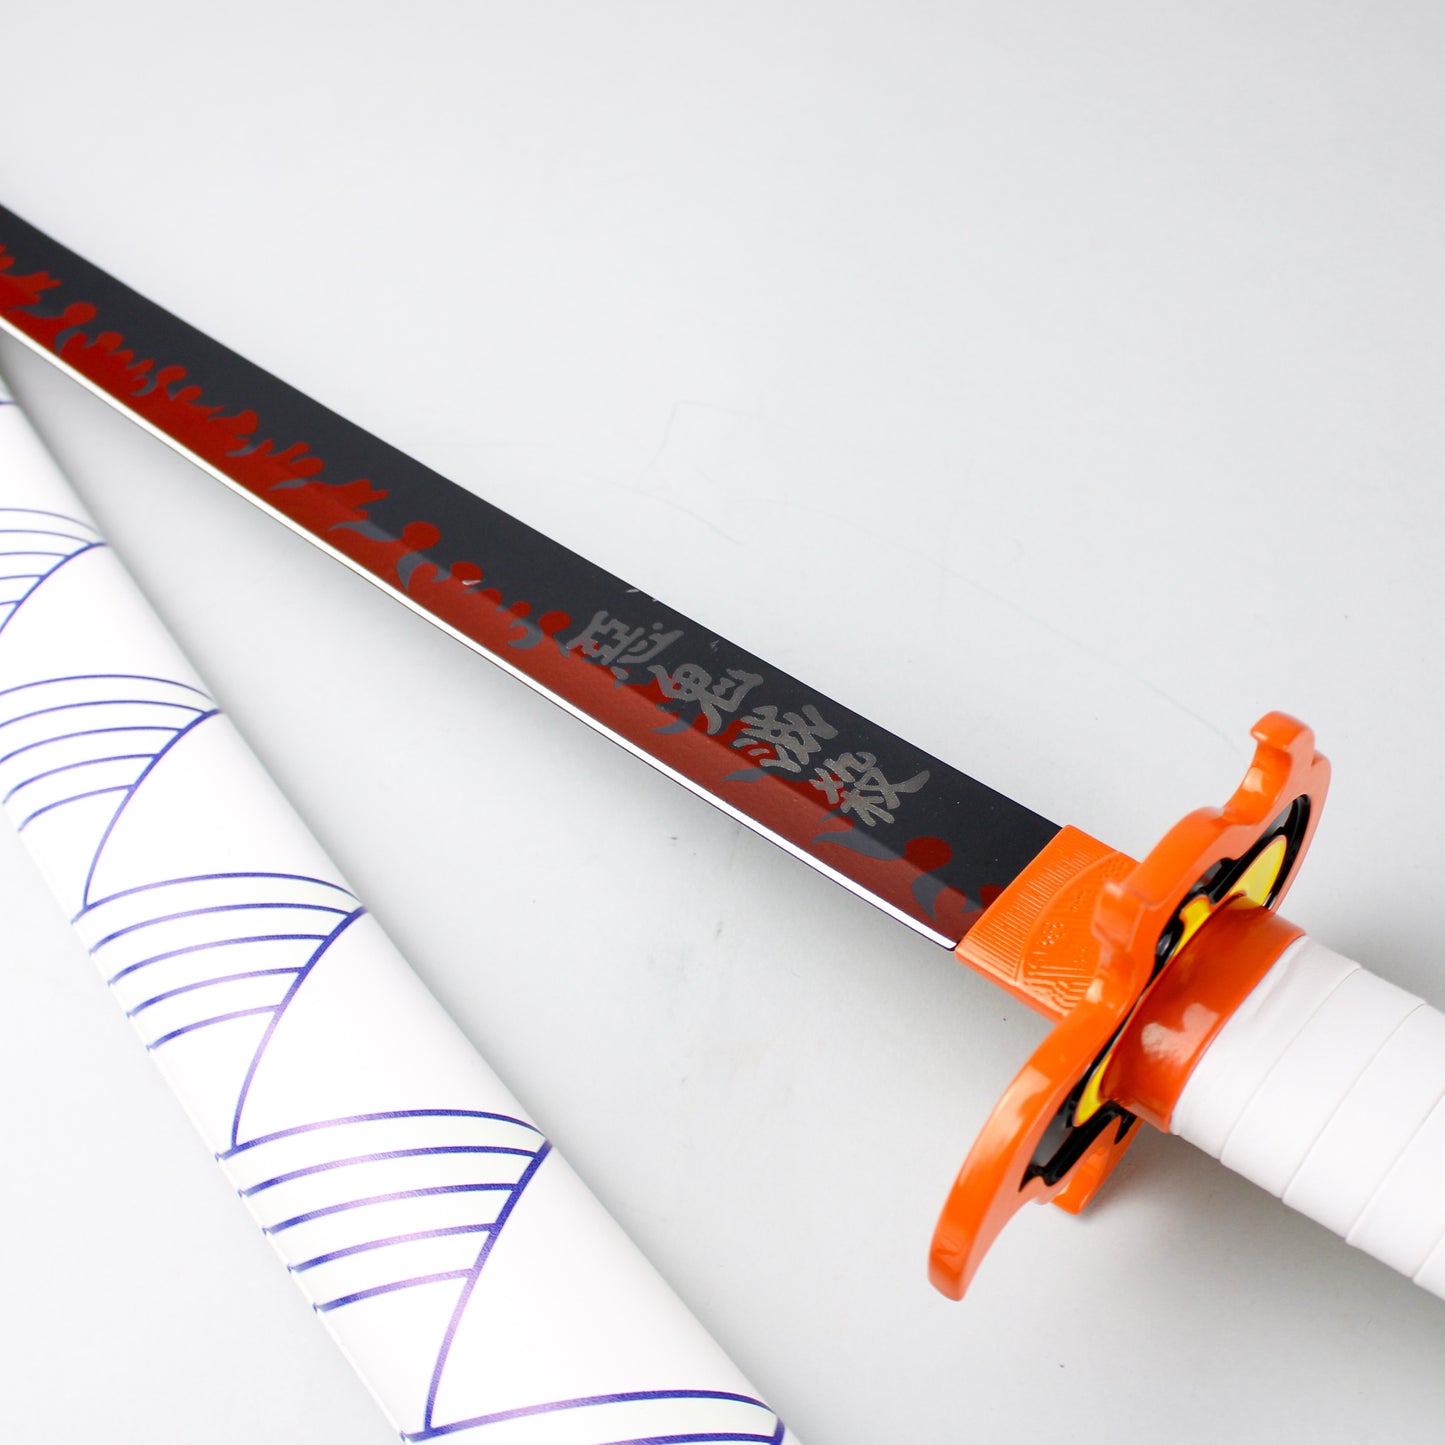 Buy Sword Inspired by Rengoku Kyojuro, CAESARS Singapore